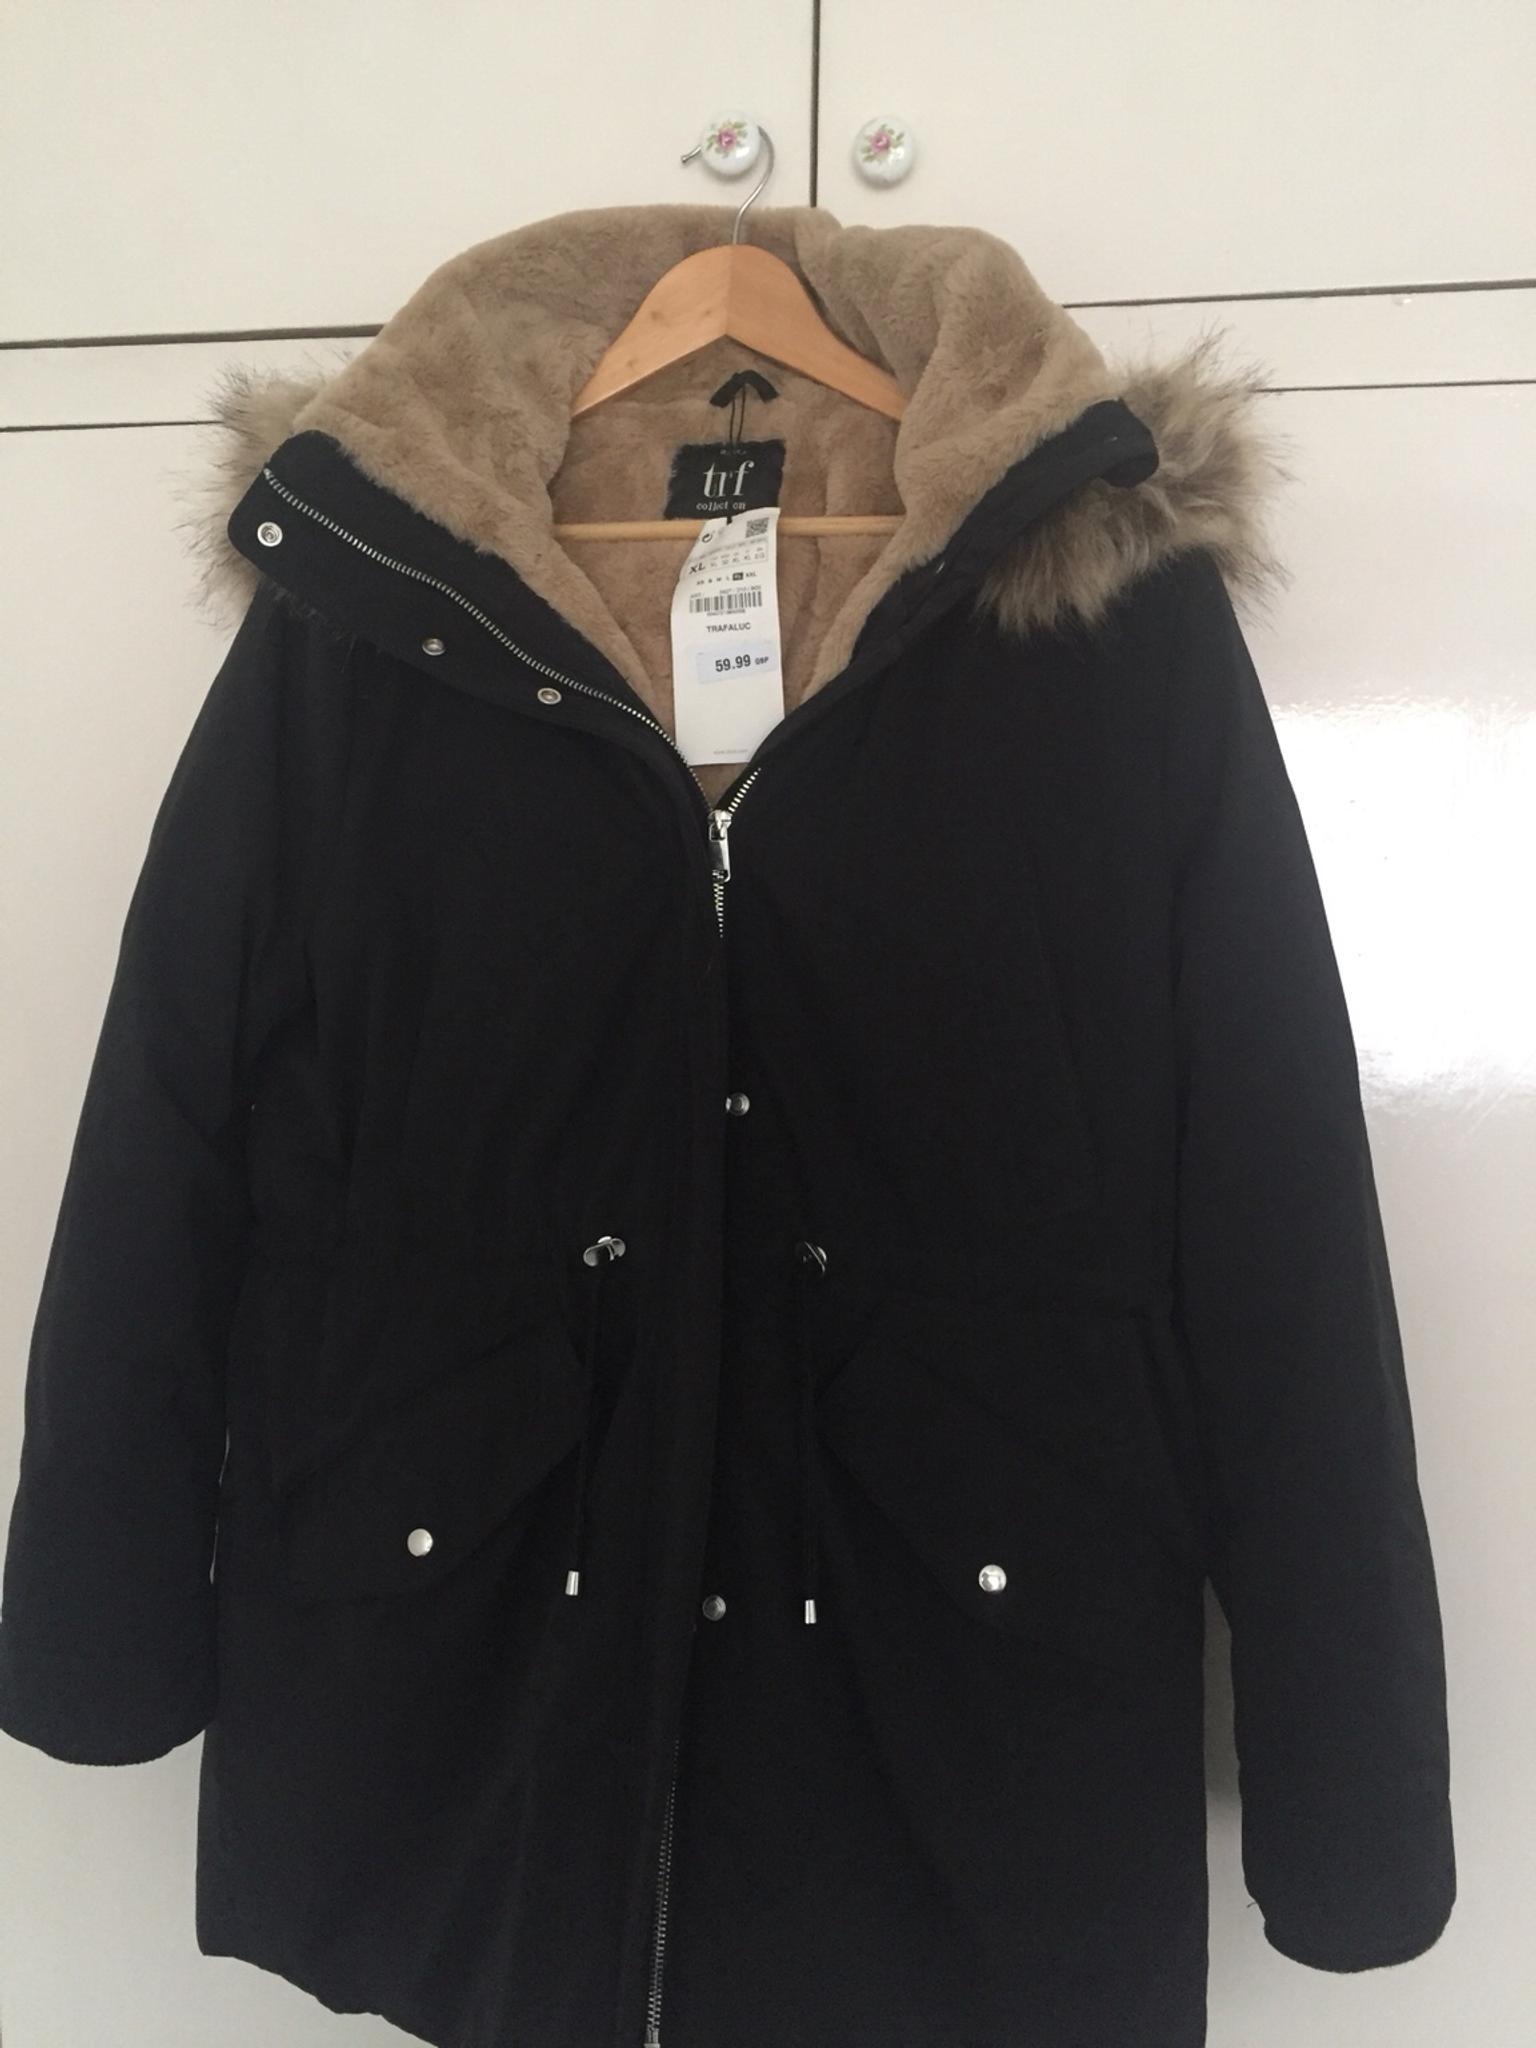 Zara TRF Coat in SM3 London for £30.00 